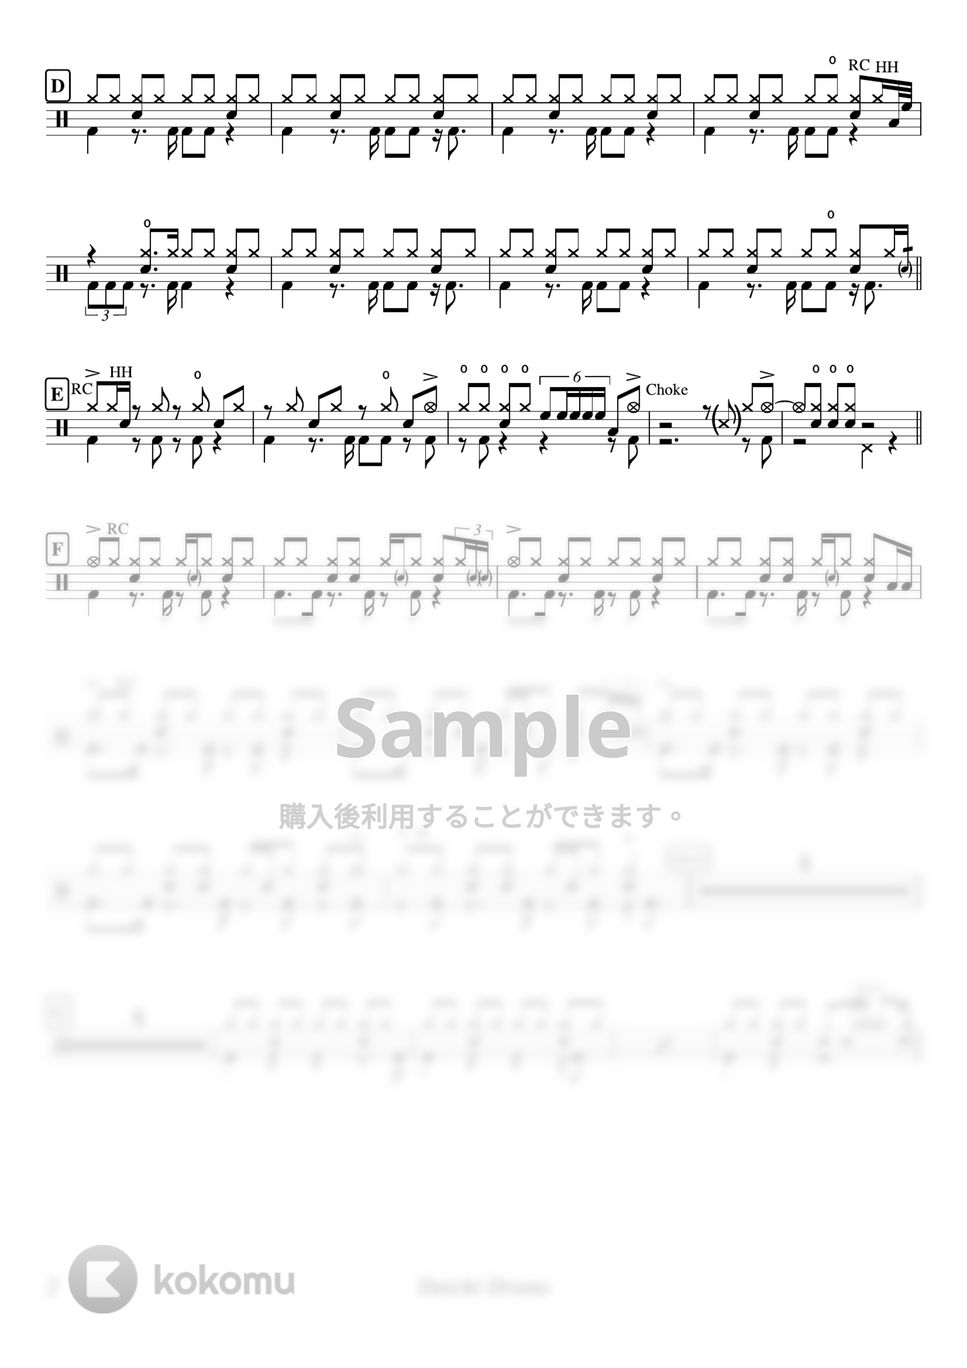 ヨルシカ - チノカテ by Daichi Drums